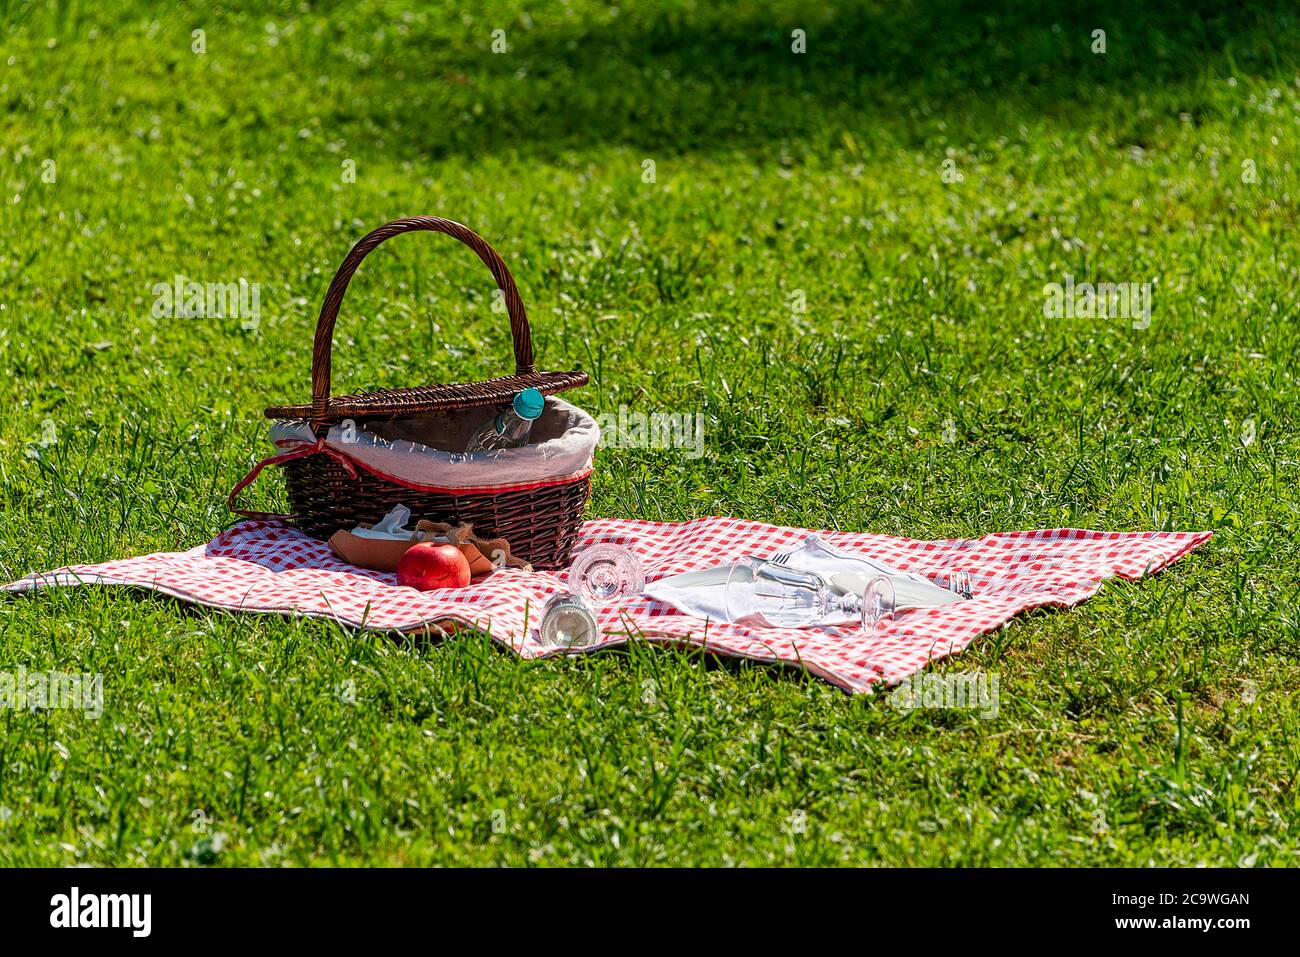 Romania, Bran - 2019 luglio: Cestino da picnic, patatine, acqua e posate su un panno rosso e bianco da tavola Foto Stock